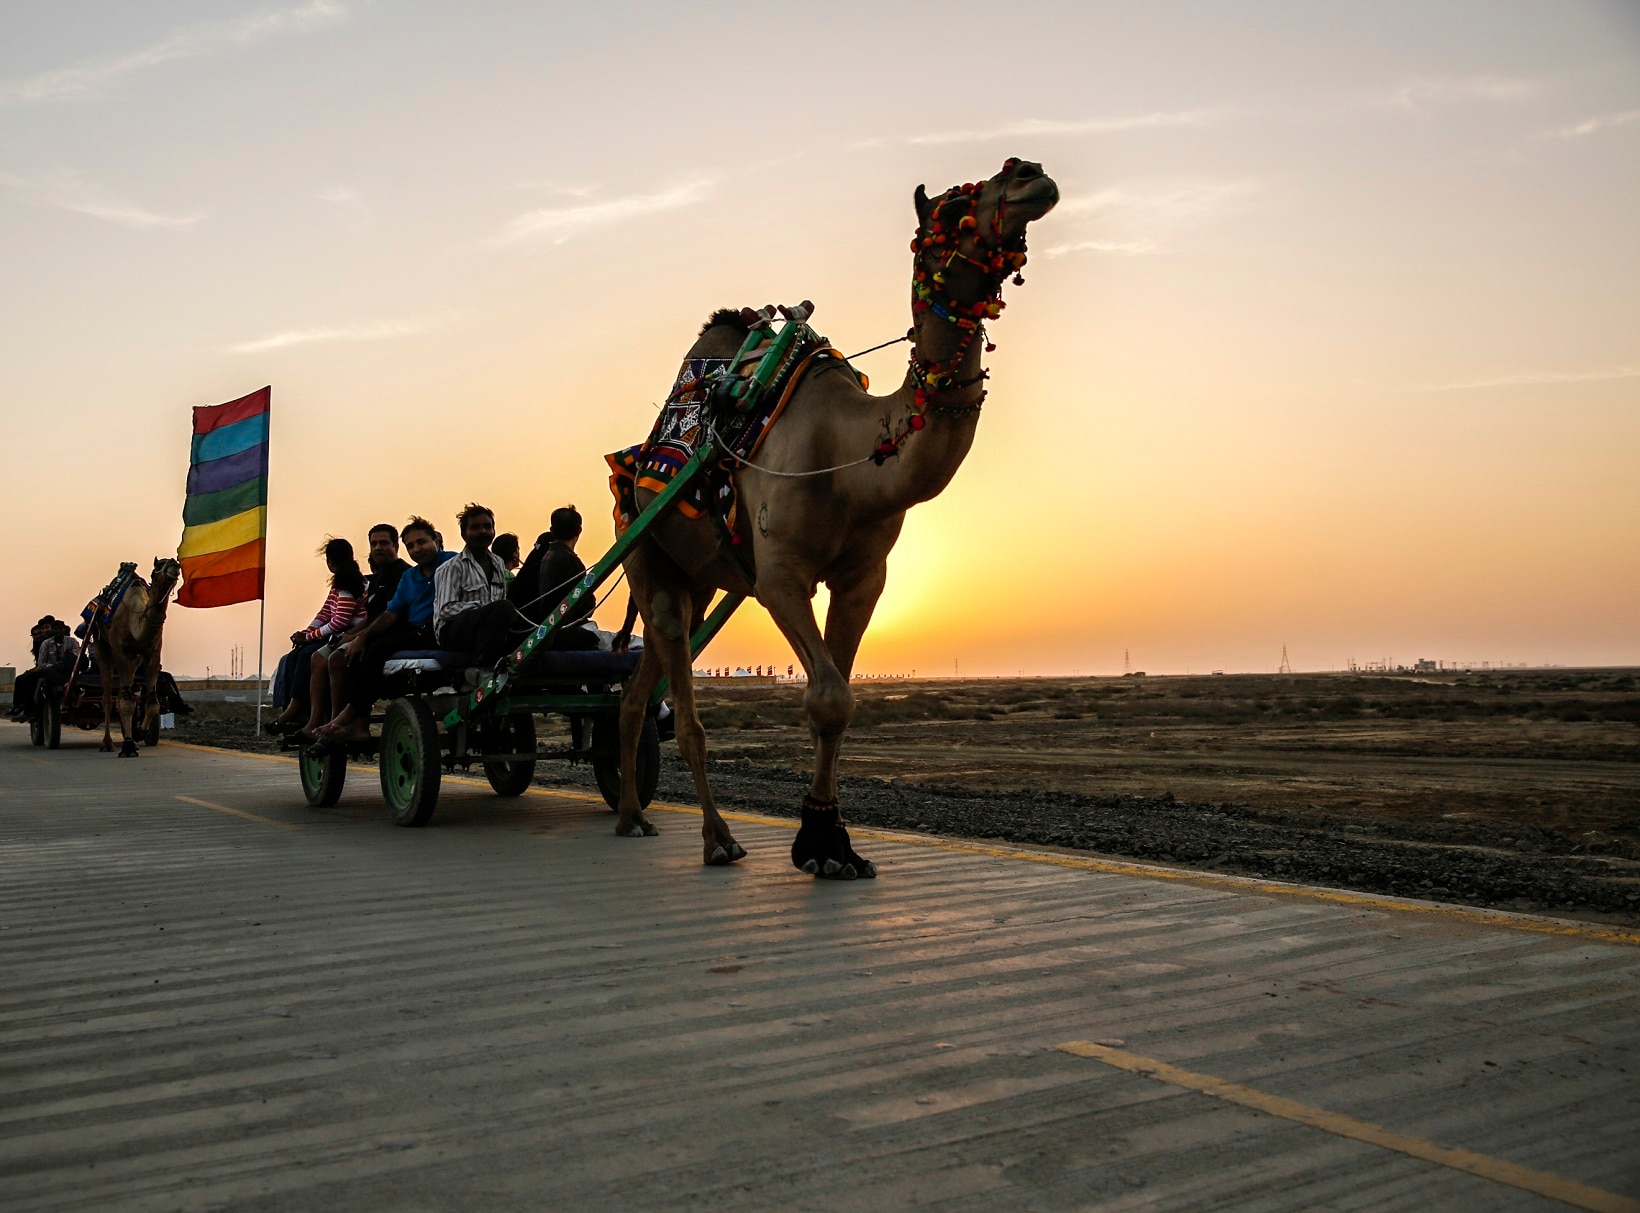 Camel Cart